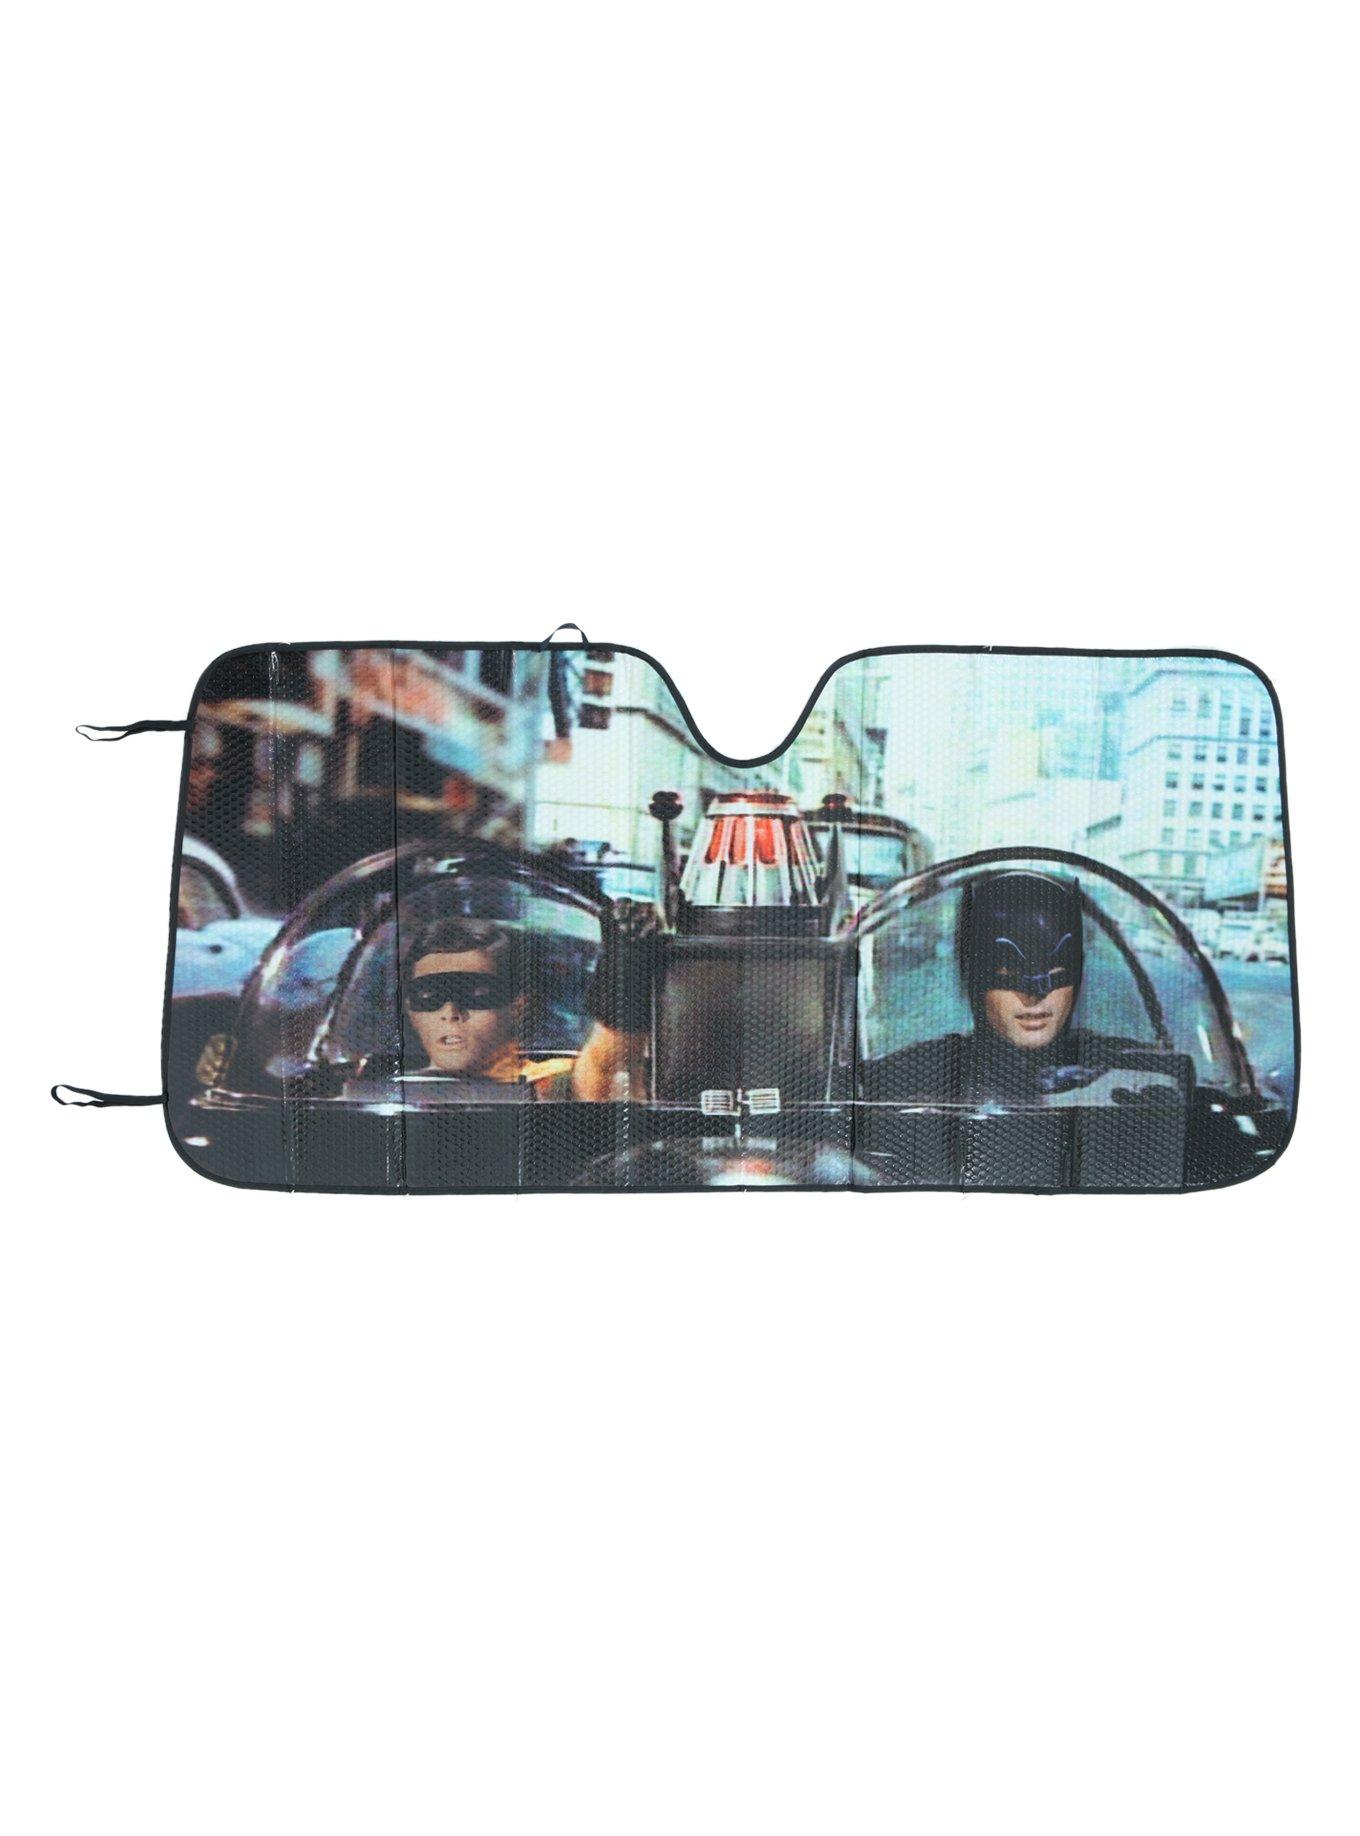 DC Comics Batman 66 Batmobile Accordion Sunshade, , hi-res